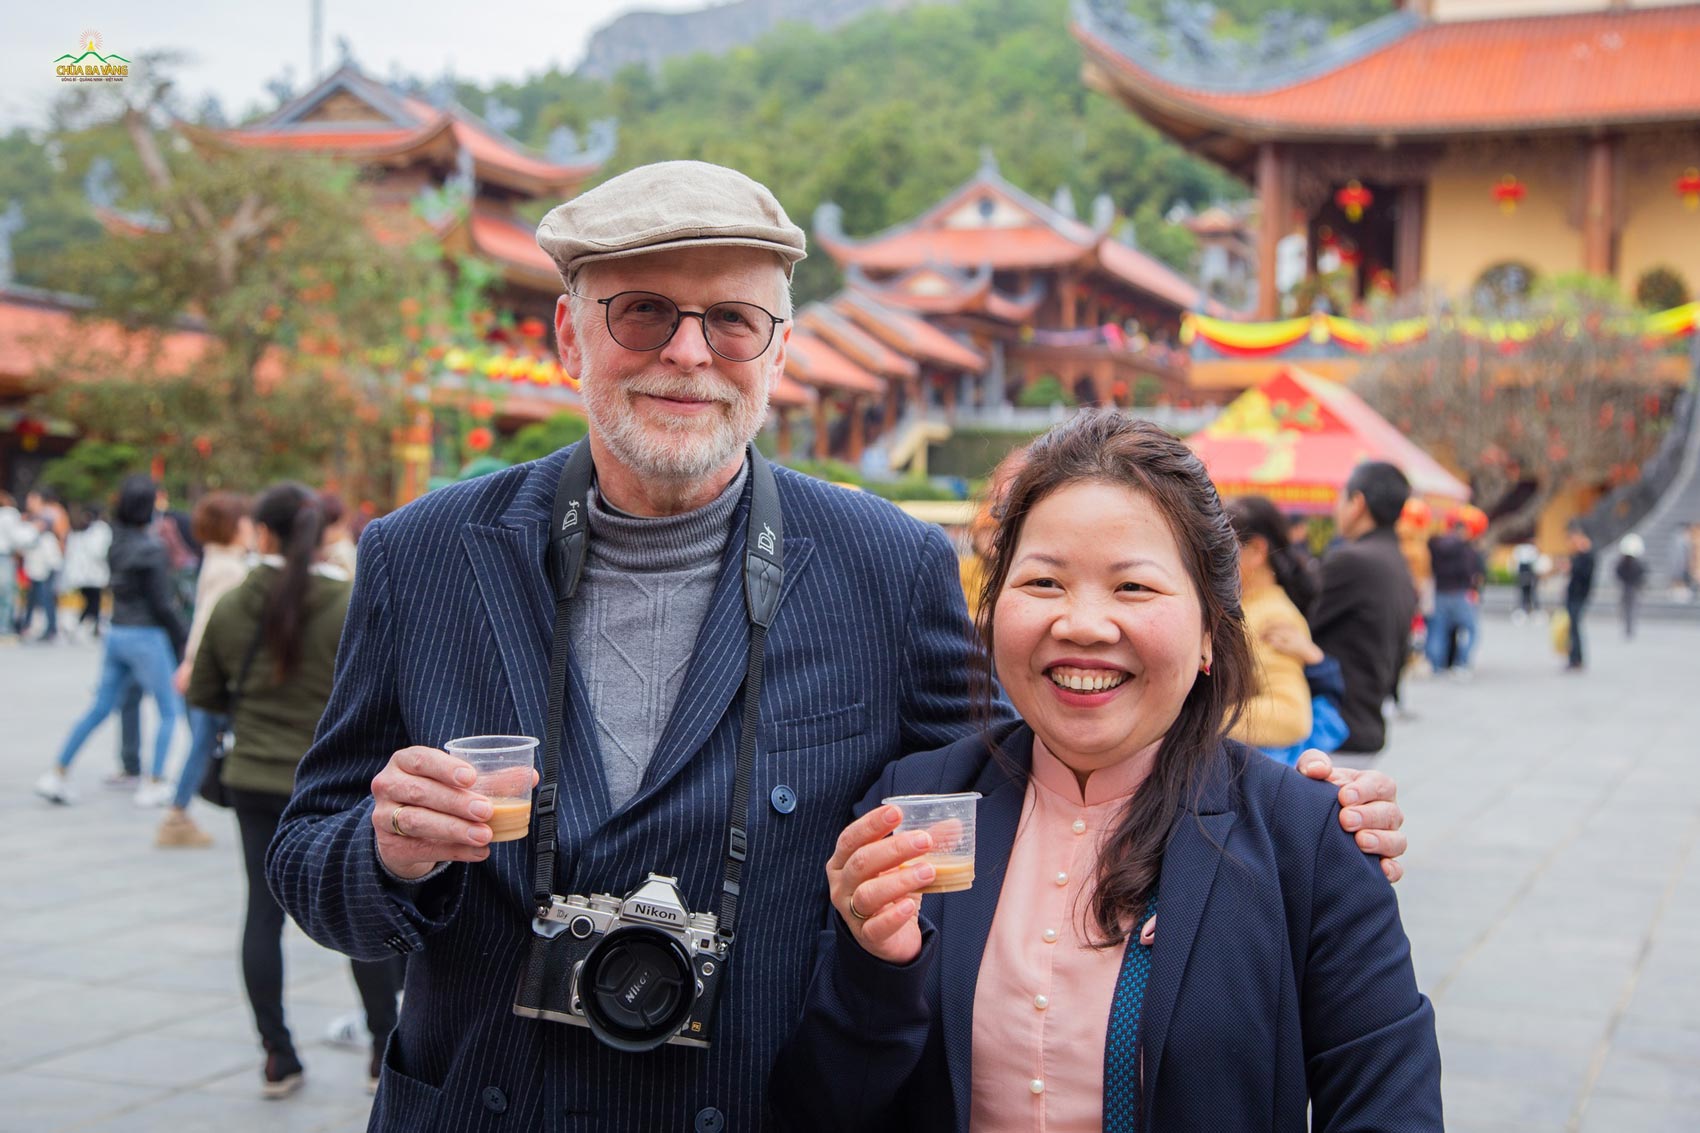 Phật tử xa xứ Đức cùng chồng thưởng thức món trà sữa được nhà chùa chuẩn bị miễn phí cho du khách thập phương